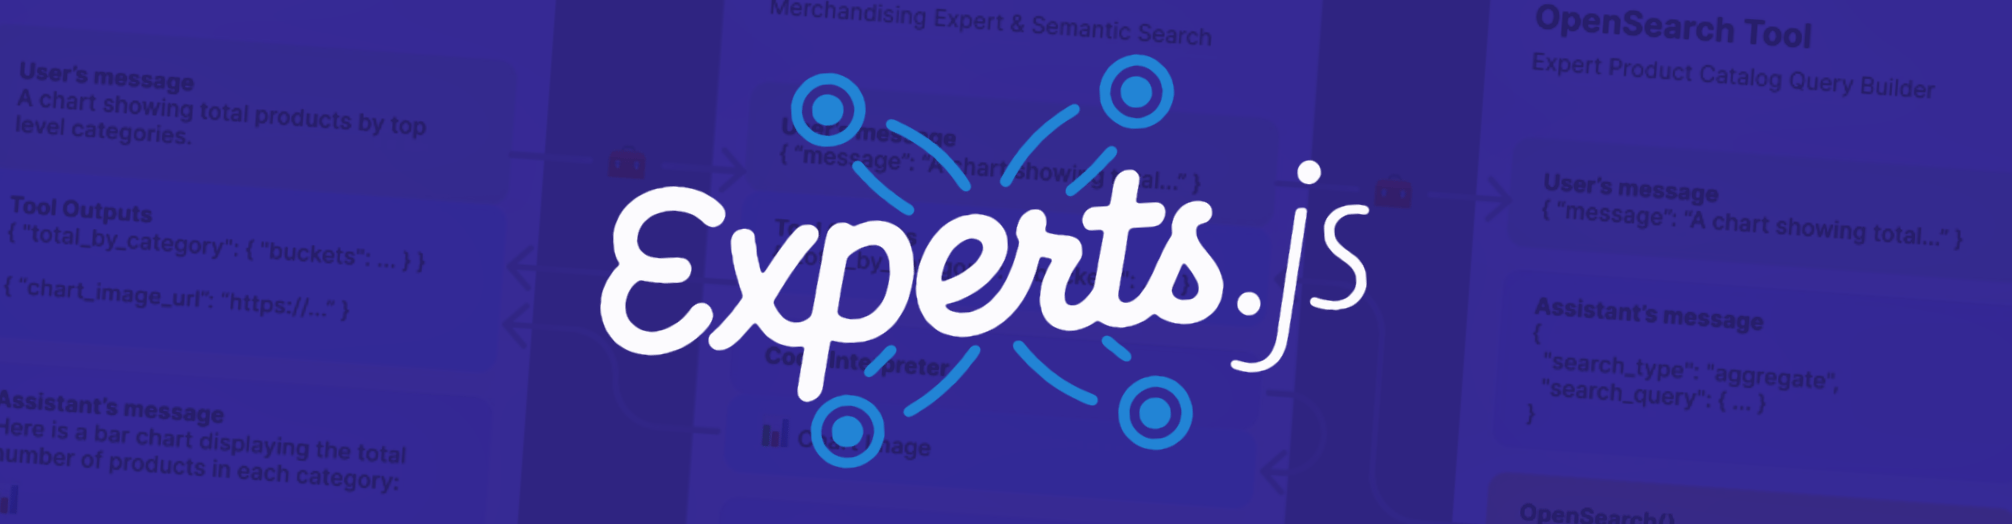 Experts.js